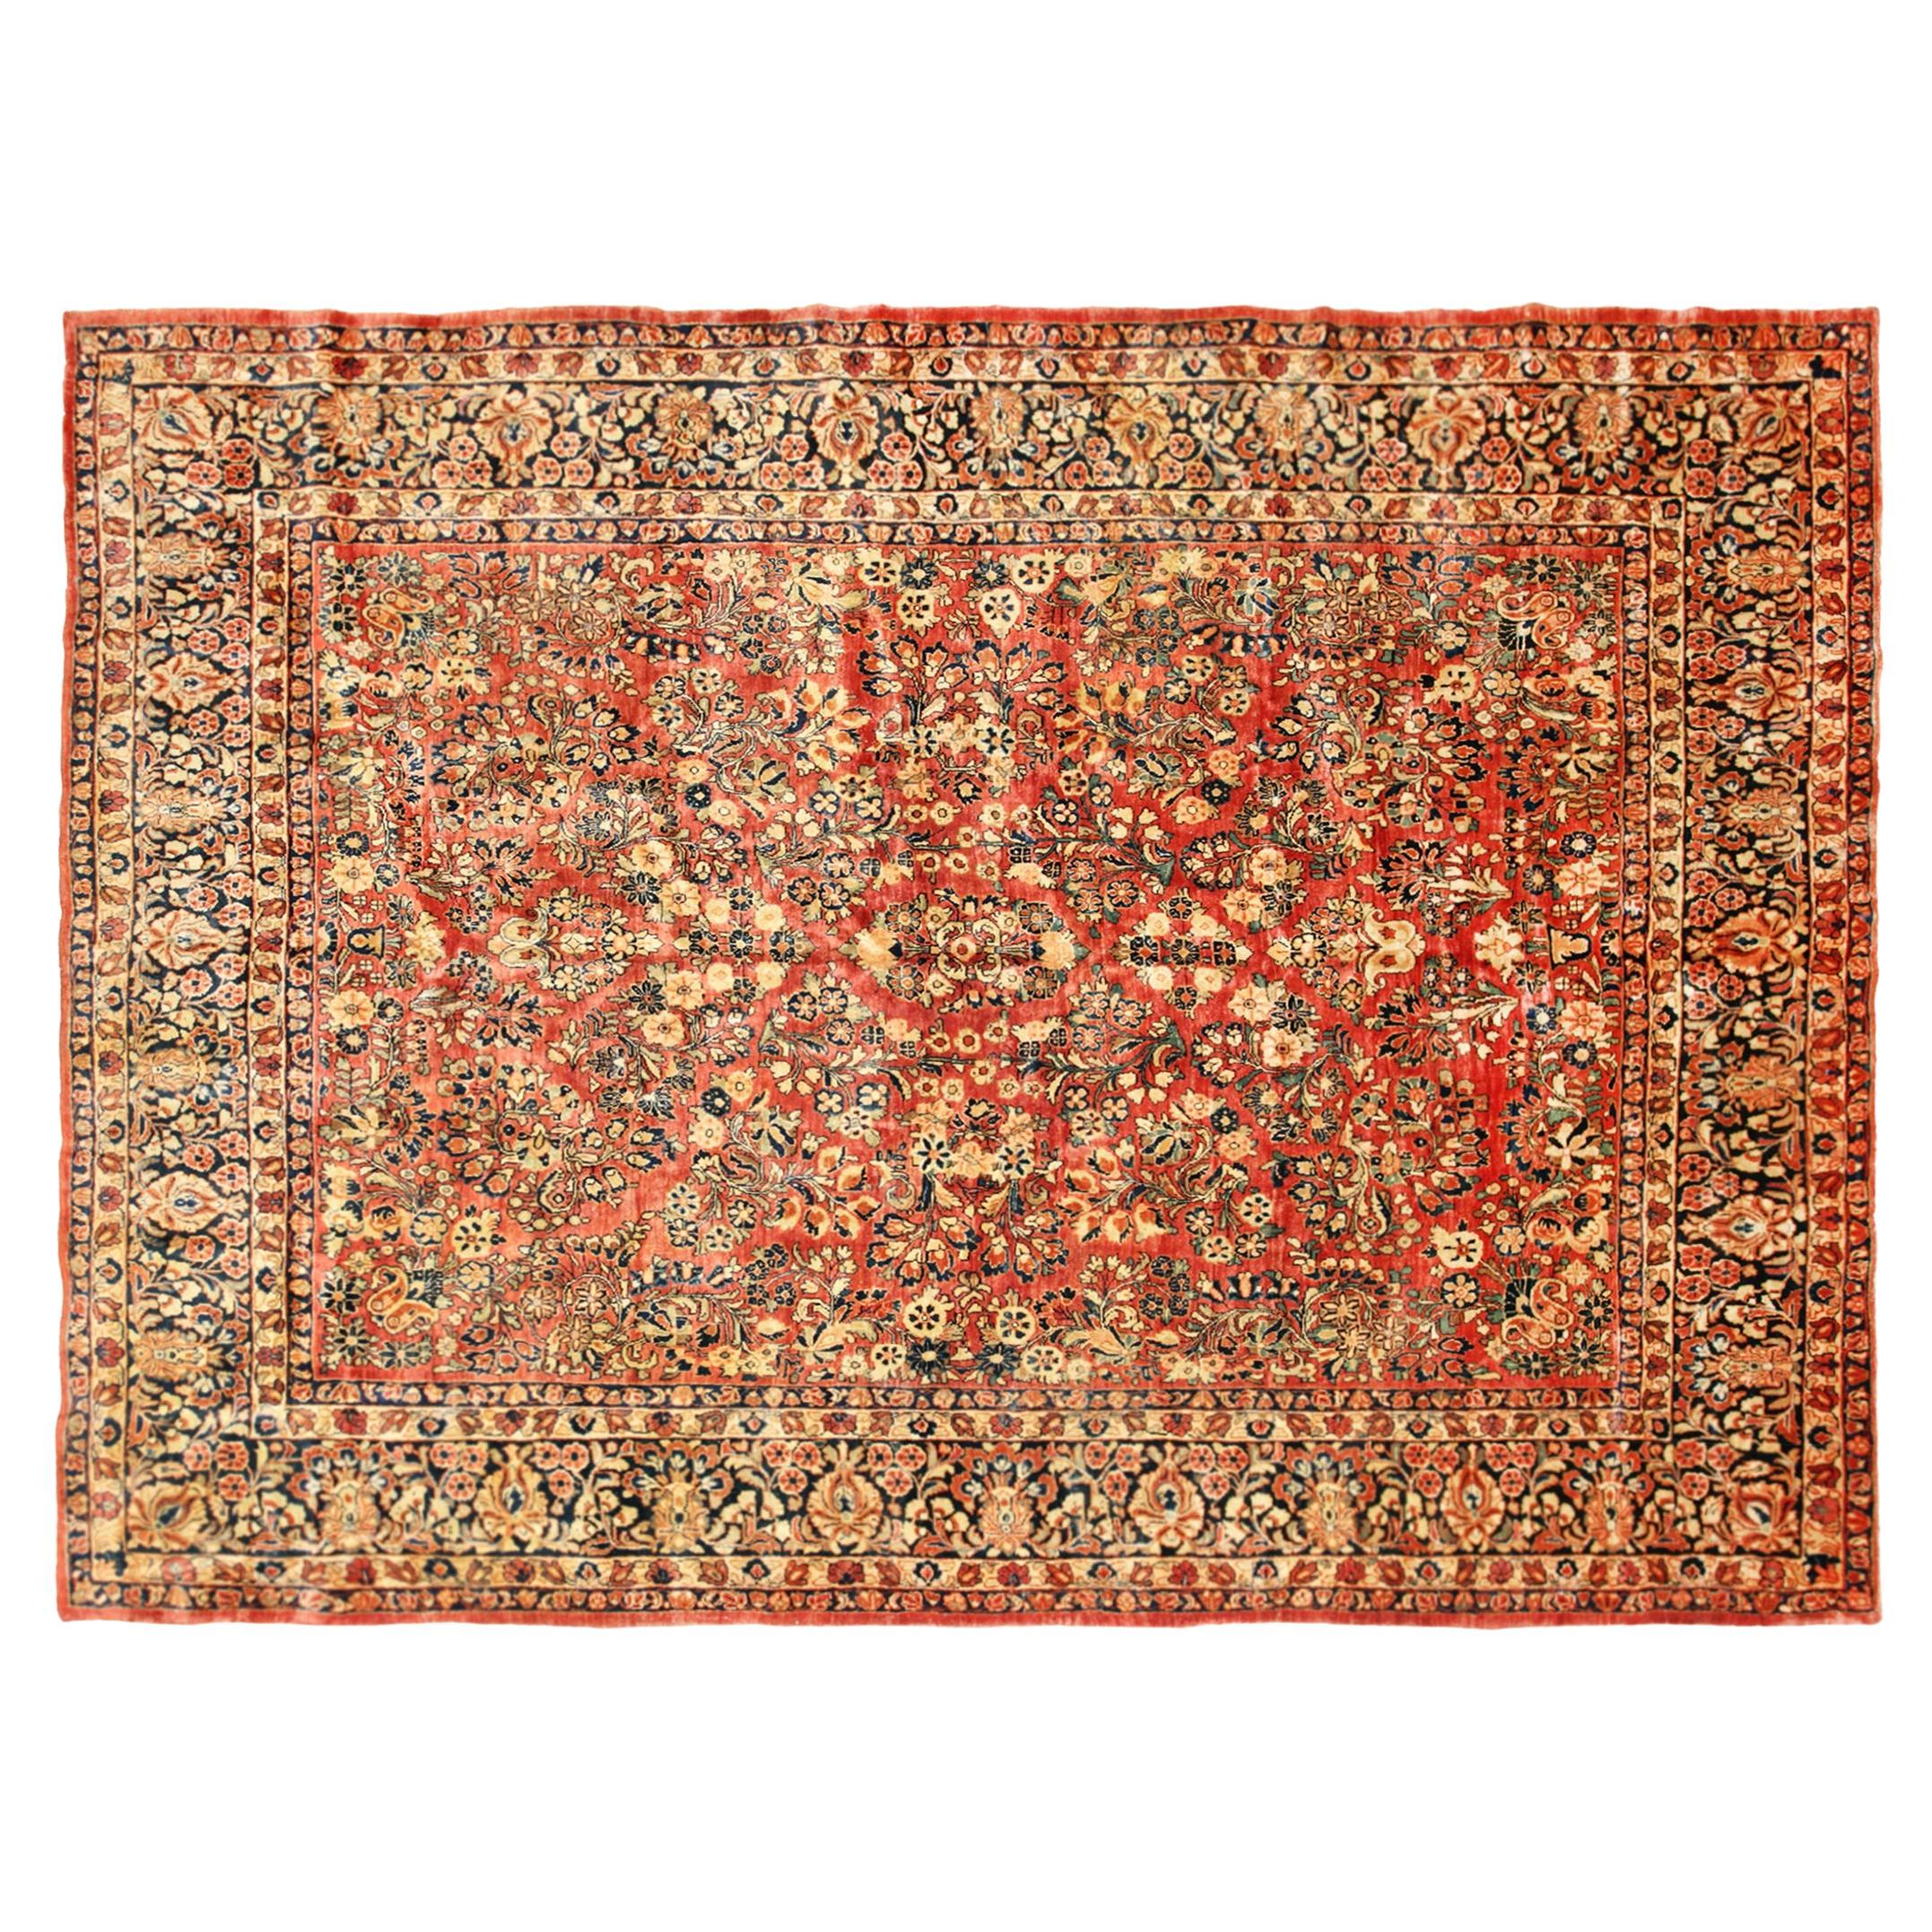 Antiker persischer Sarouk- Orientalischer Teppich in Zimmergröße, mit kompliziertem Blumenmuster